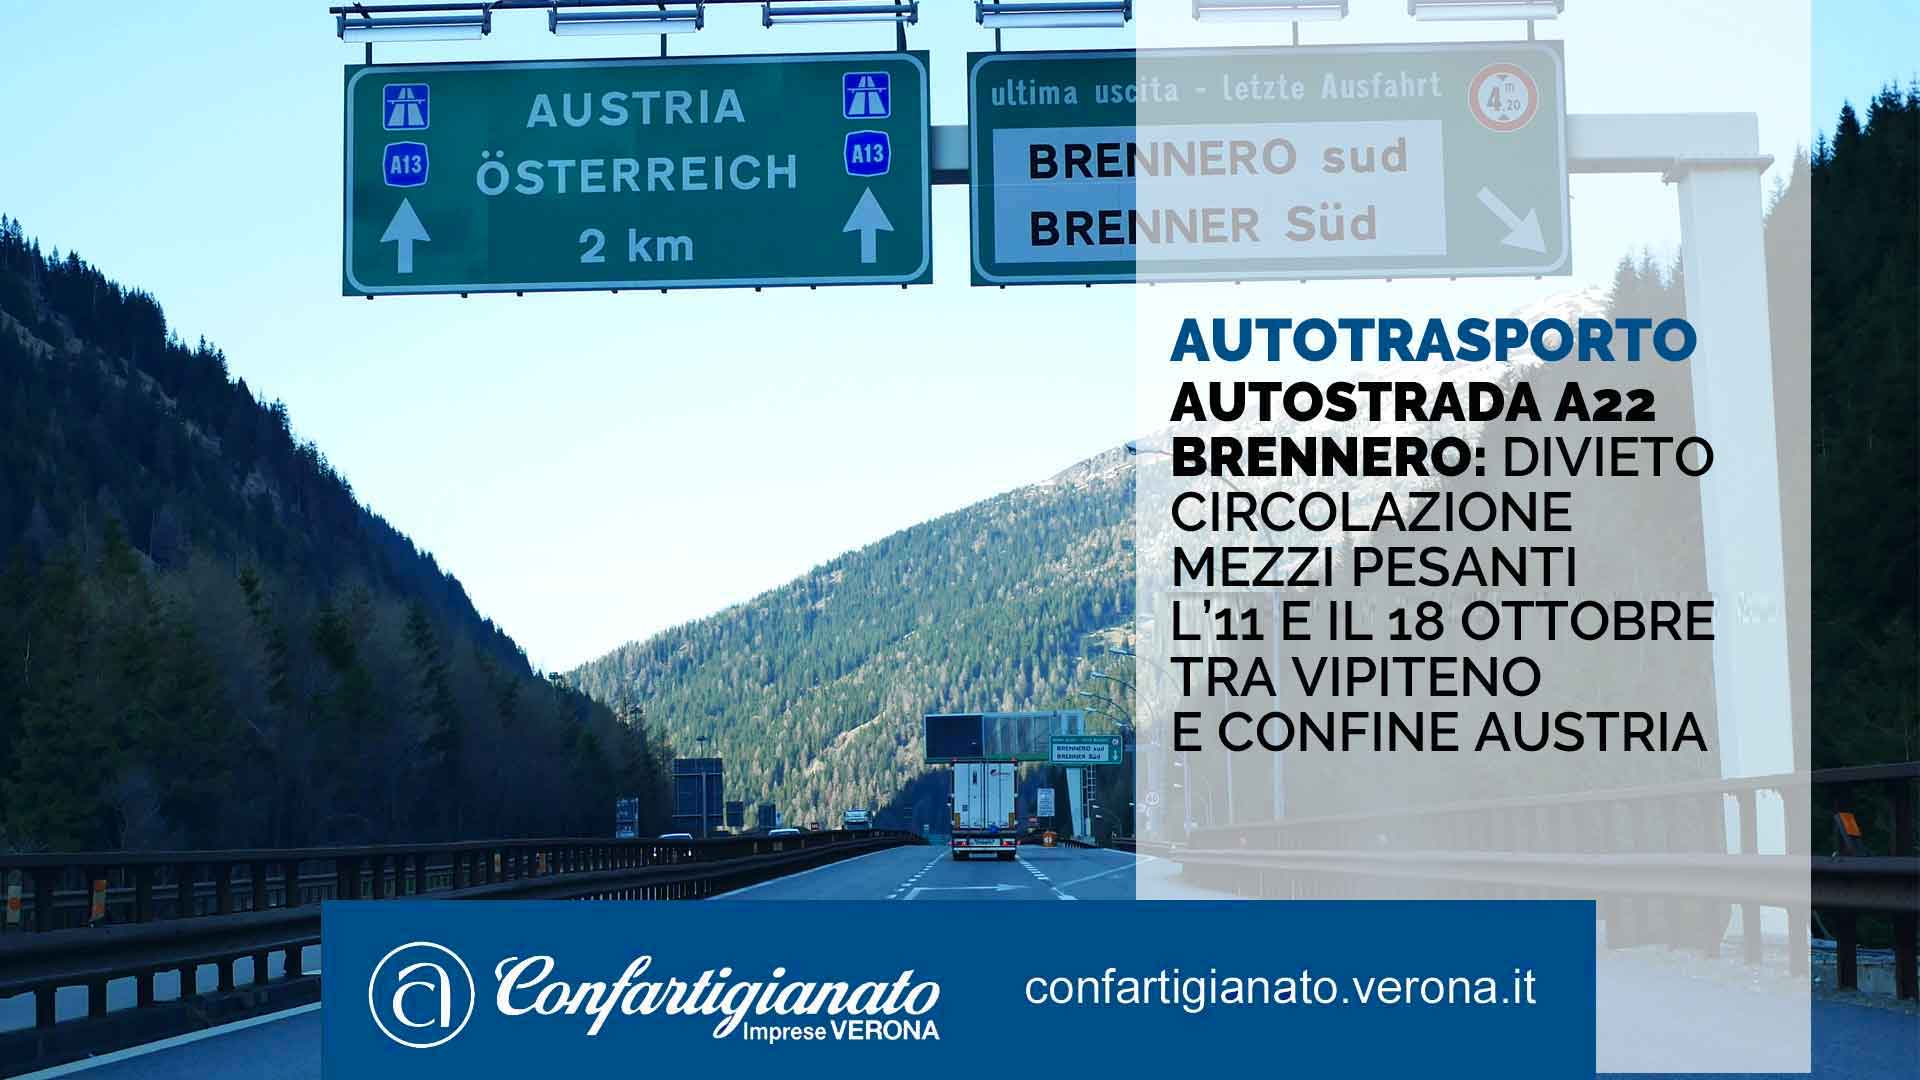 AUTOTRASPORTO – Autostrada A22 del Brennero: divieto circolazione mezzi pesanti l'11 e il 18 ottobre tra Vipiteno e confine Austria